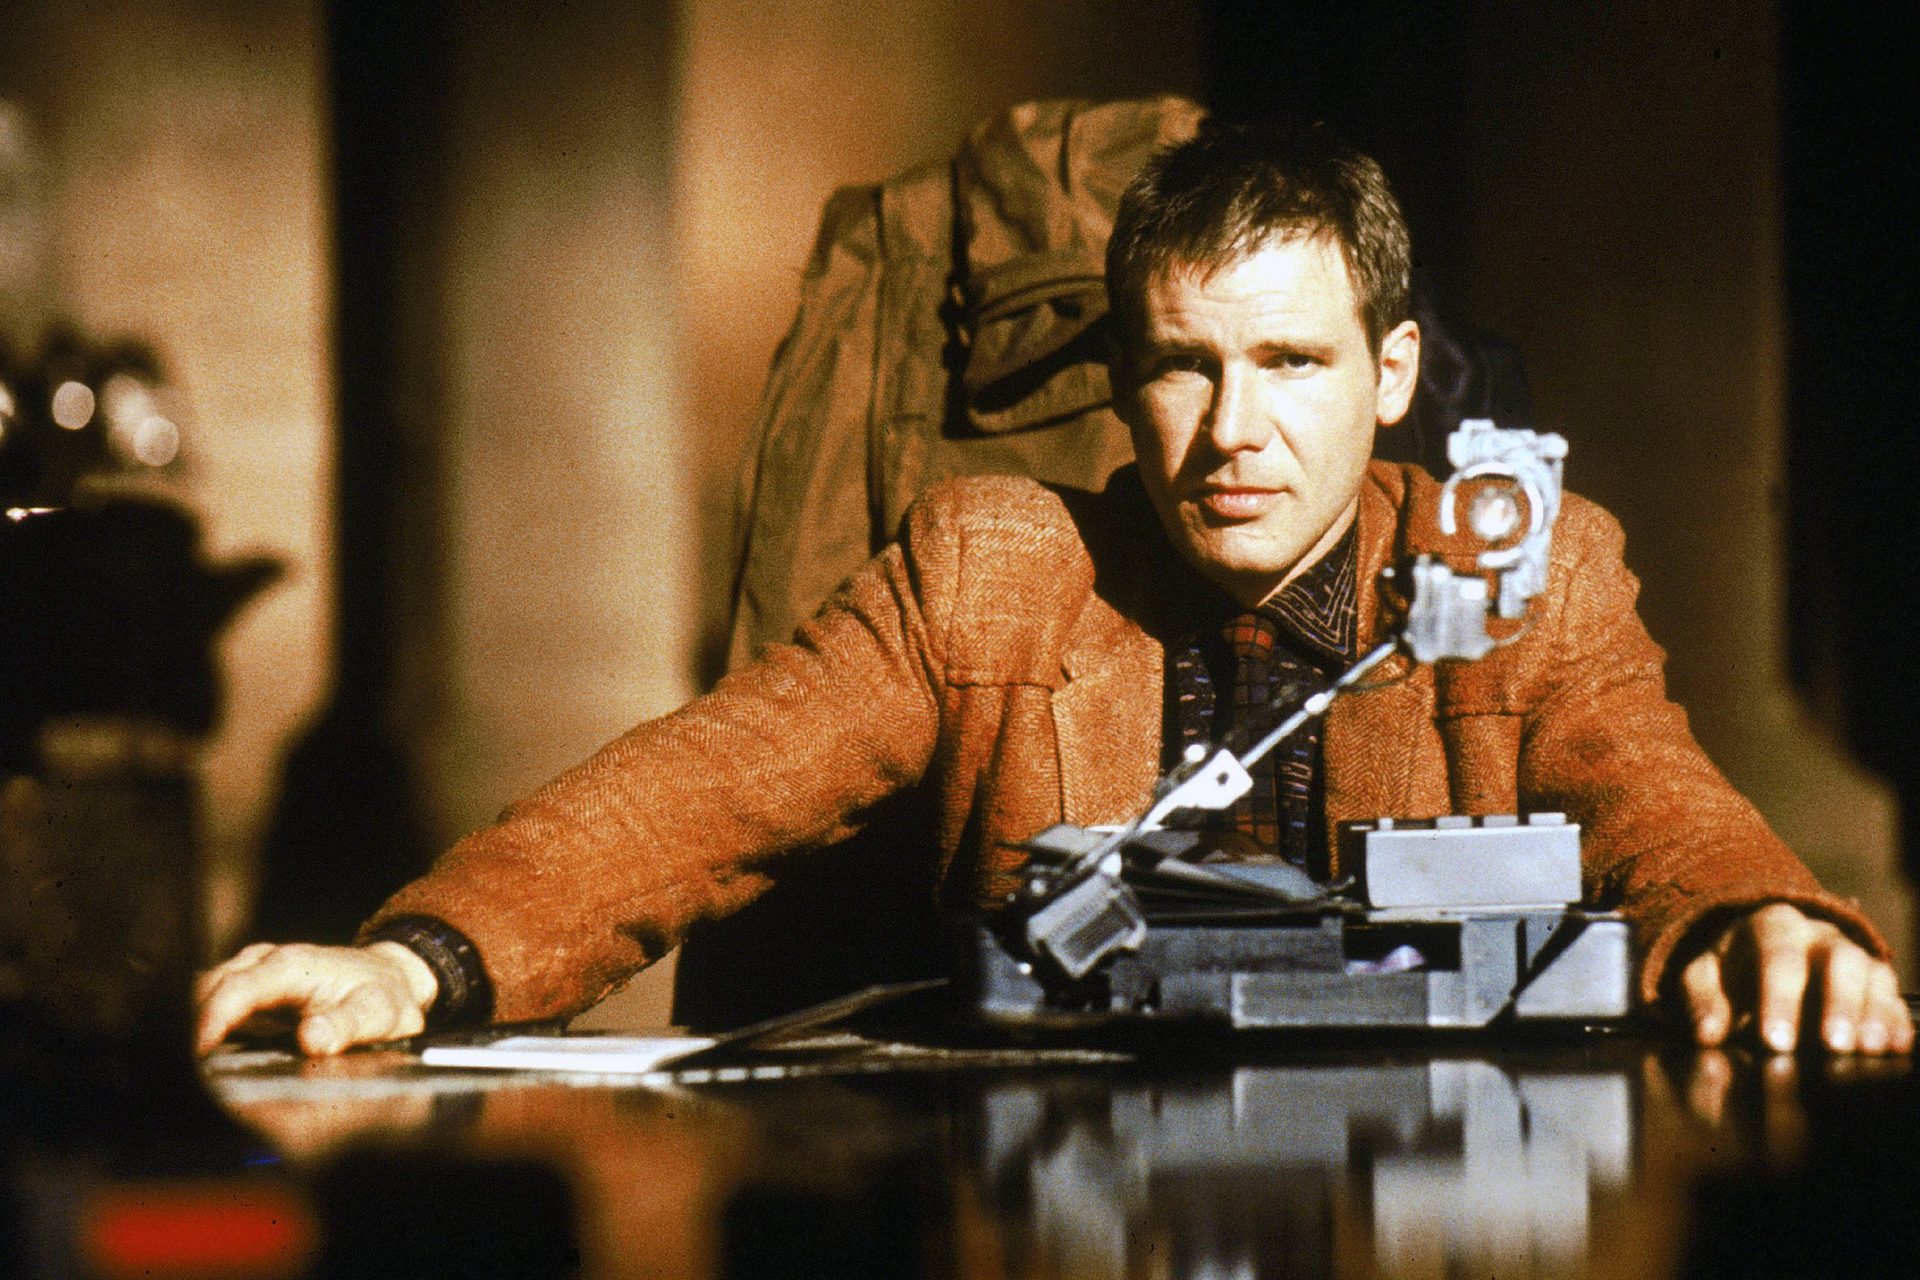 'Blade Runner' (1982) - Ridley Scott